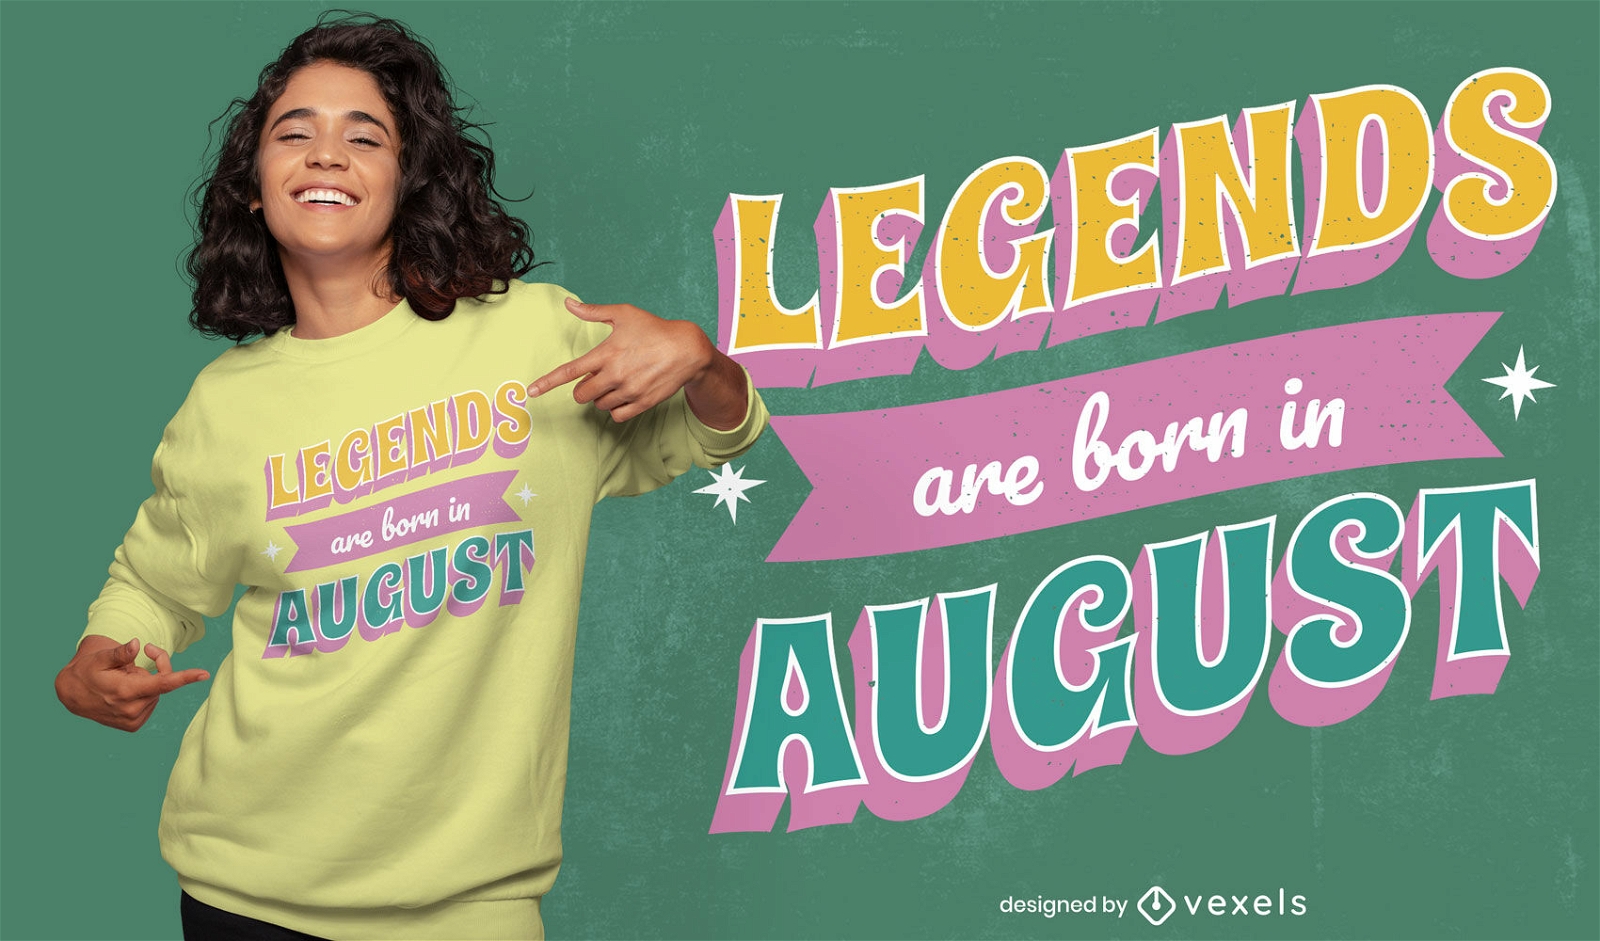 Dise?o de camiseta de leyendas nacidas en agosto.